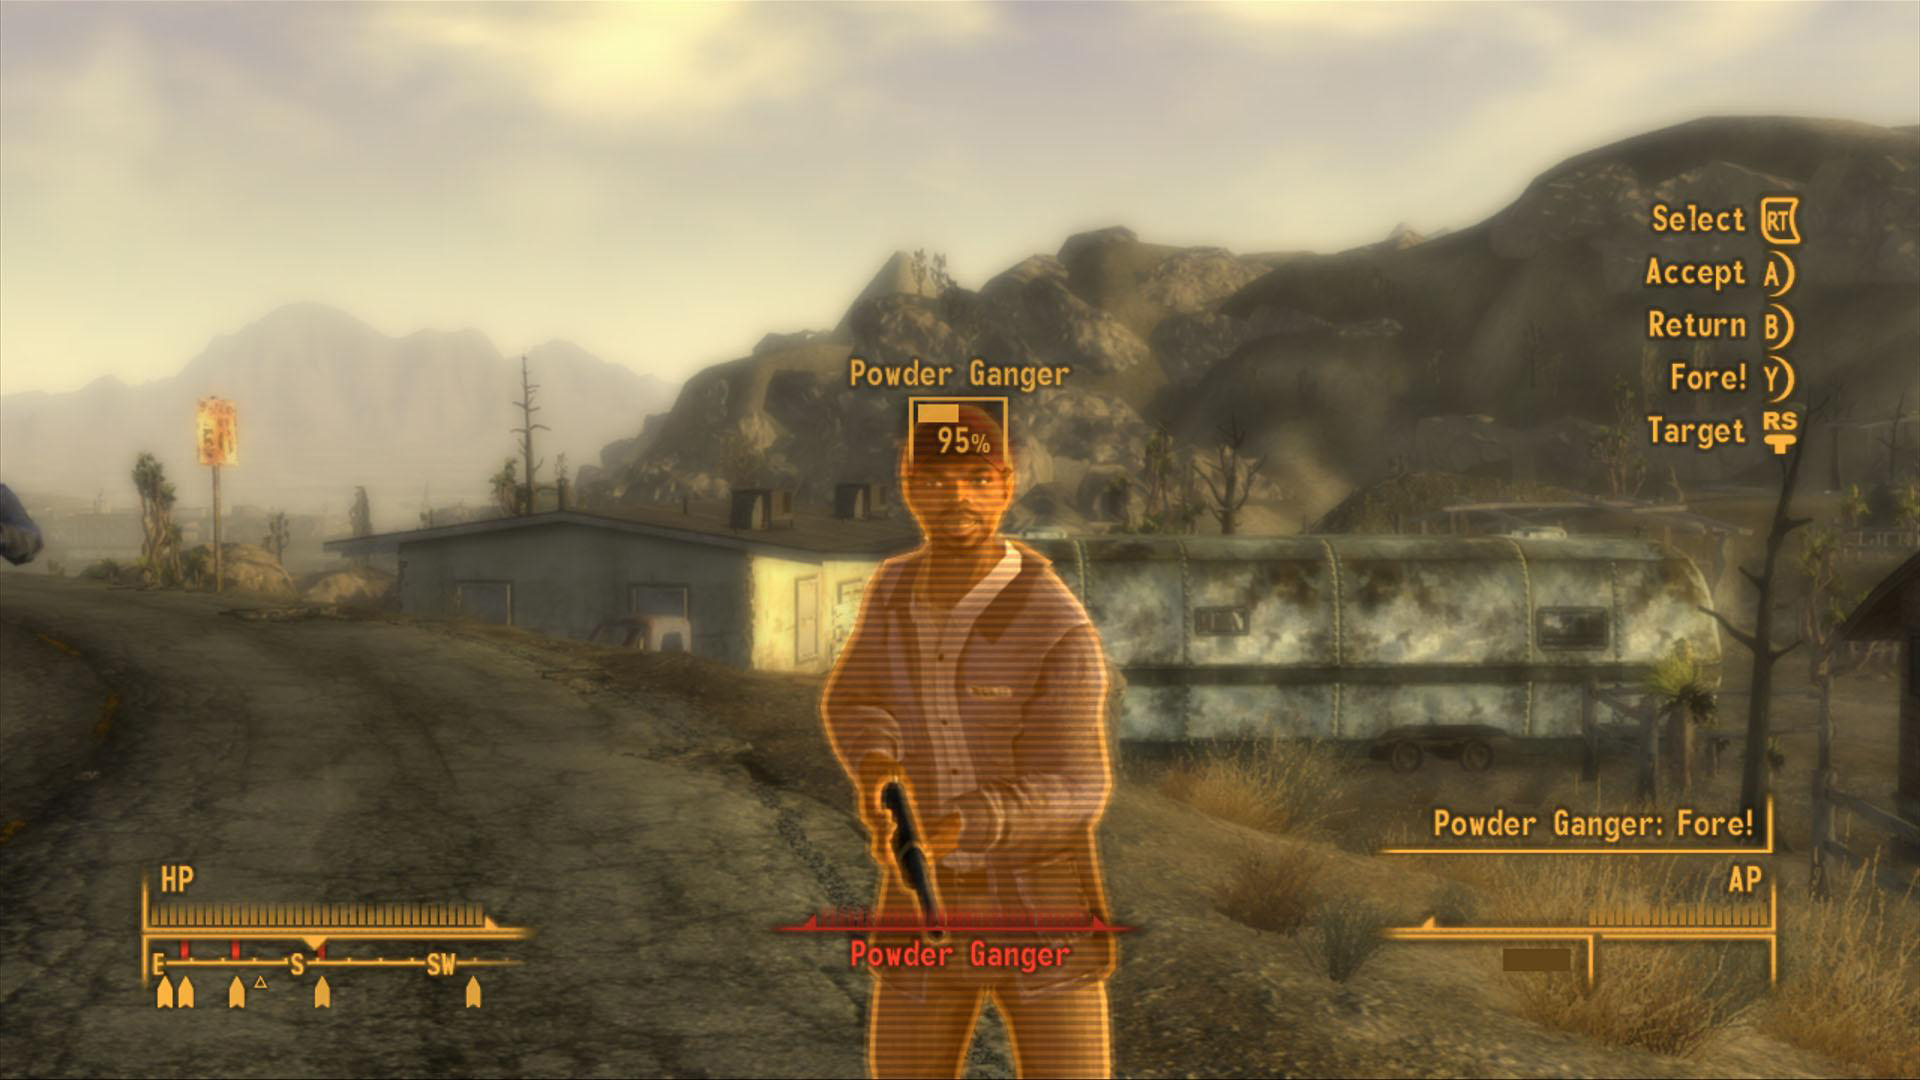 12 лет спустя я испортил свой повтор Fallout: New Vegas еще до того, как начал его